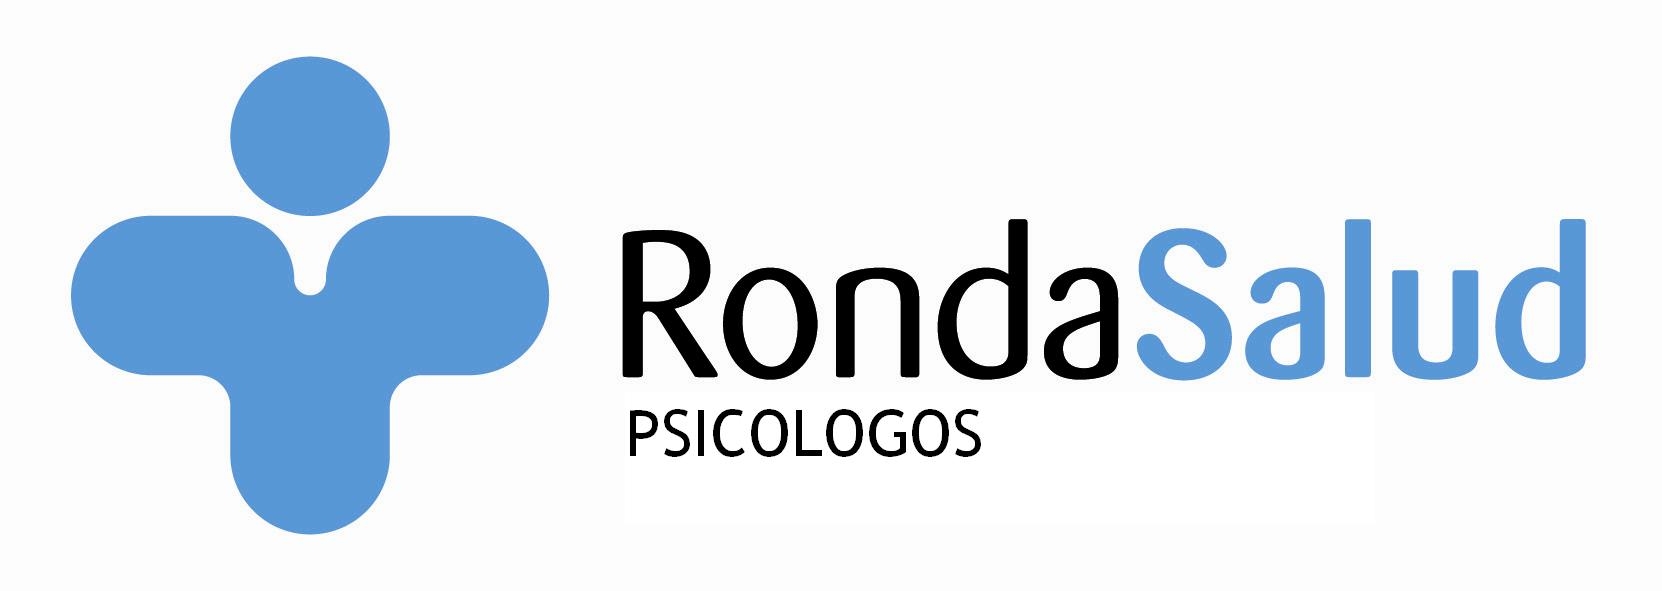 Logotipo de la clínica Rondasalud Psicólogos Jaen